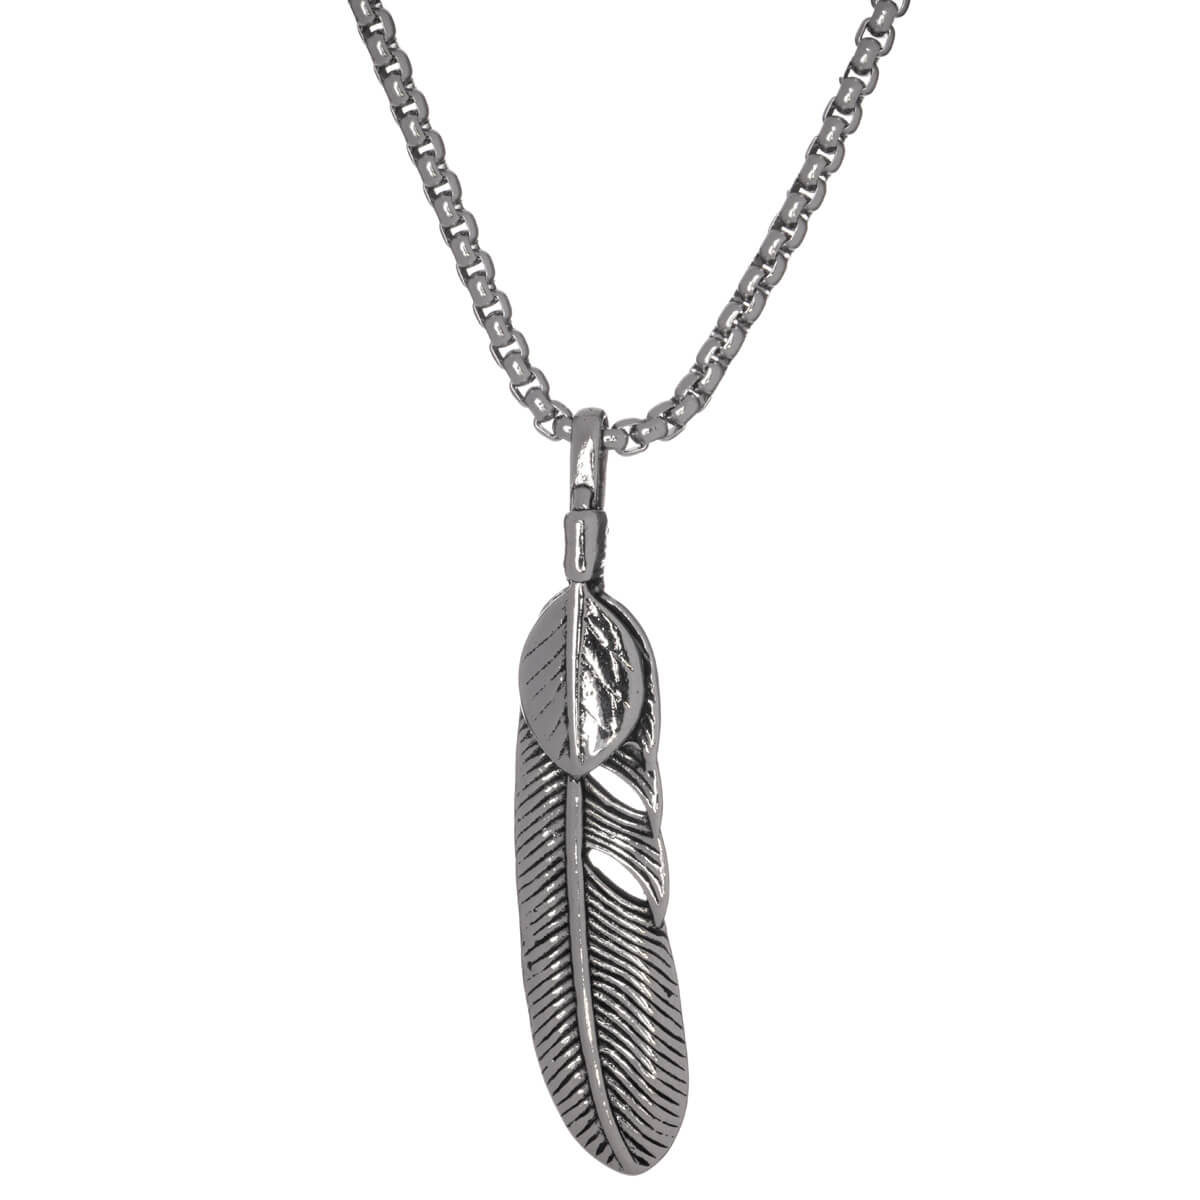 Feather pendant necklace 72cm